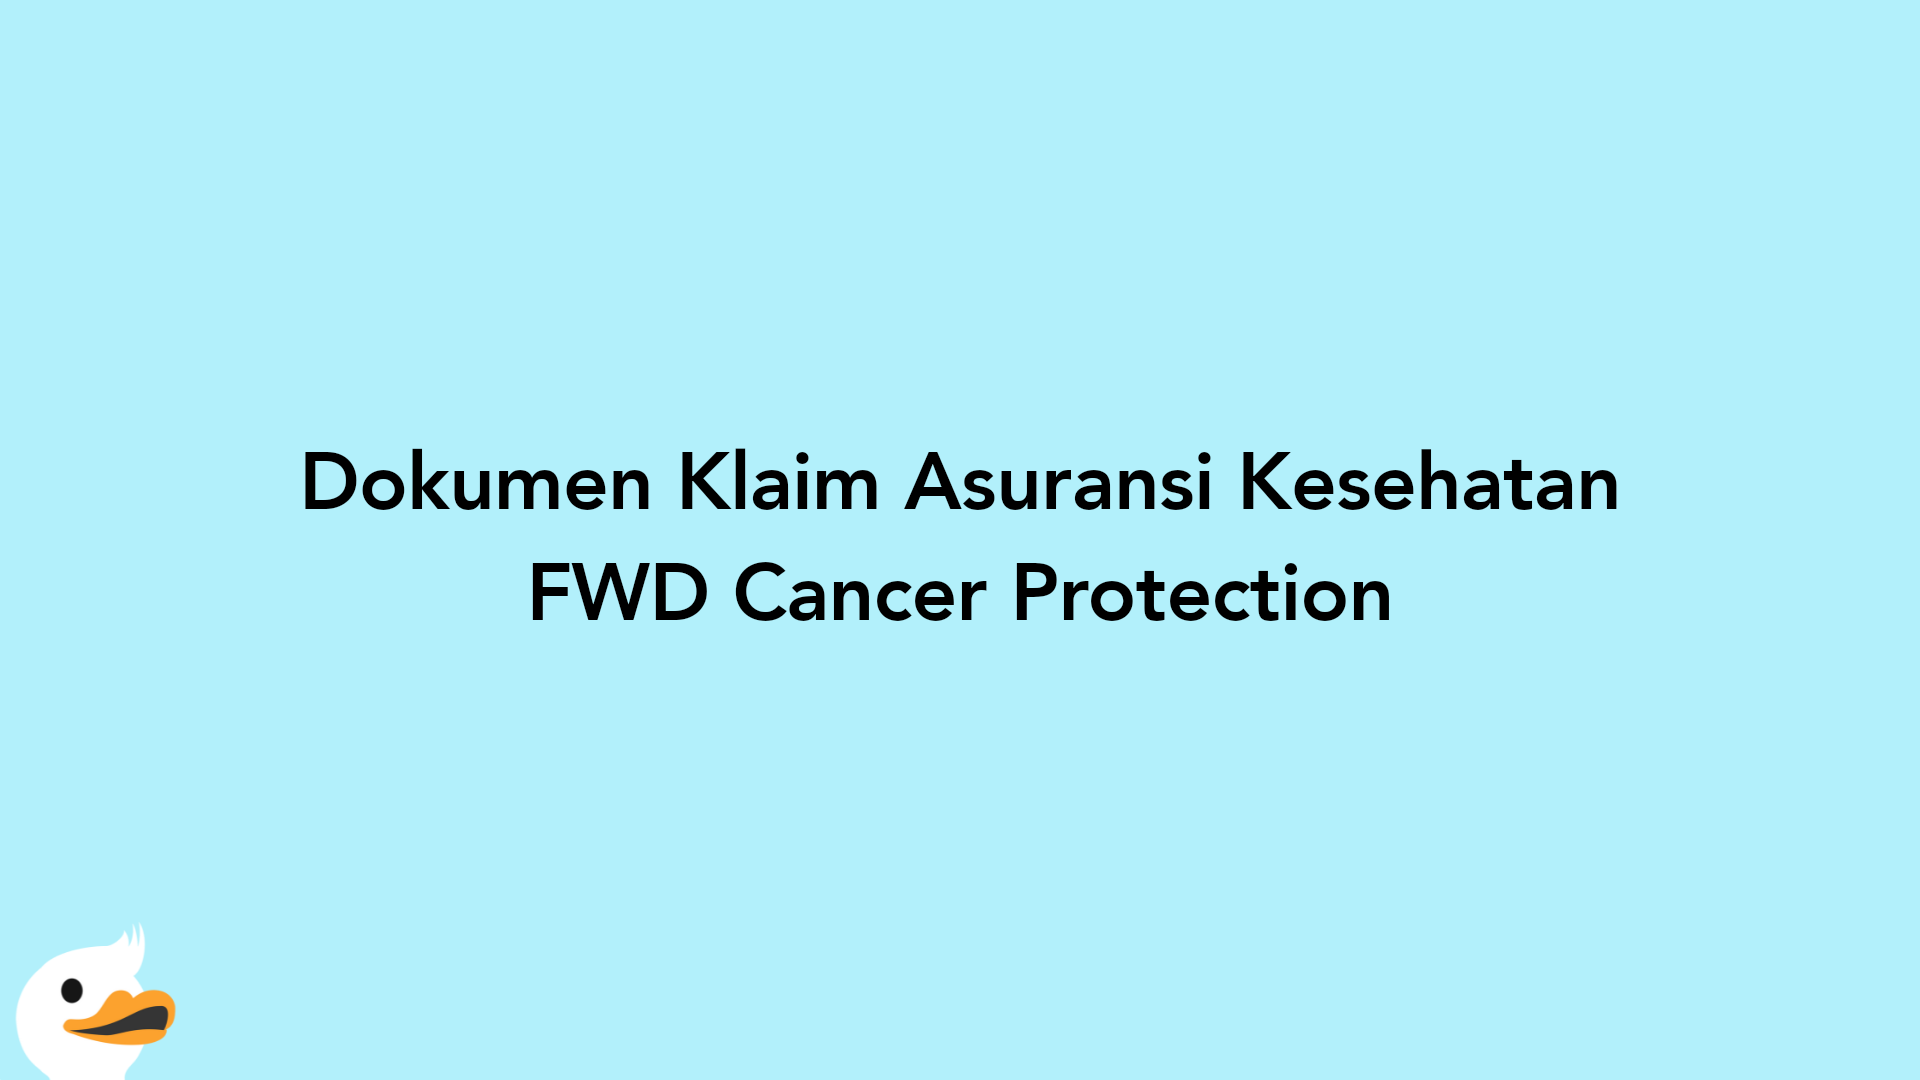 Dokumen Klaim Asuransi Kesehatan FWD Cancer Protection